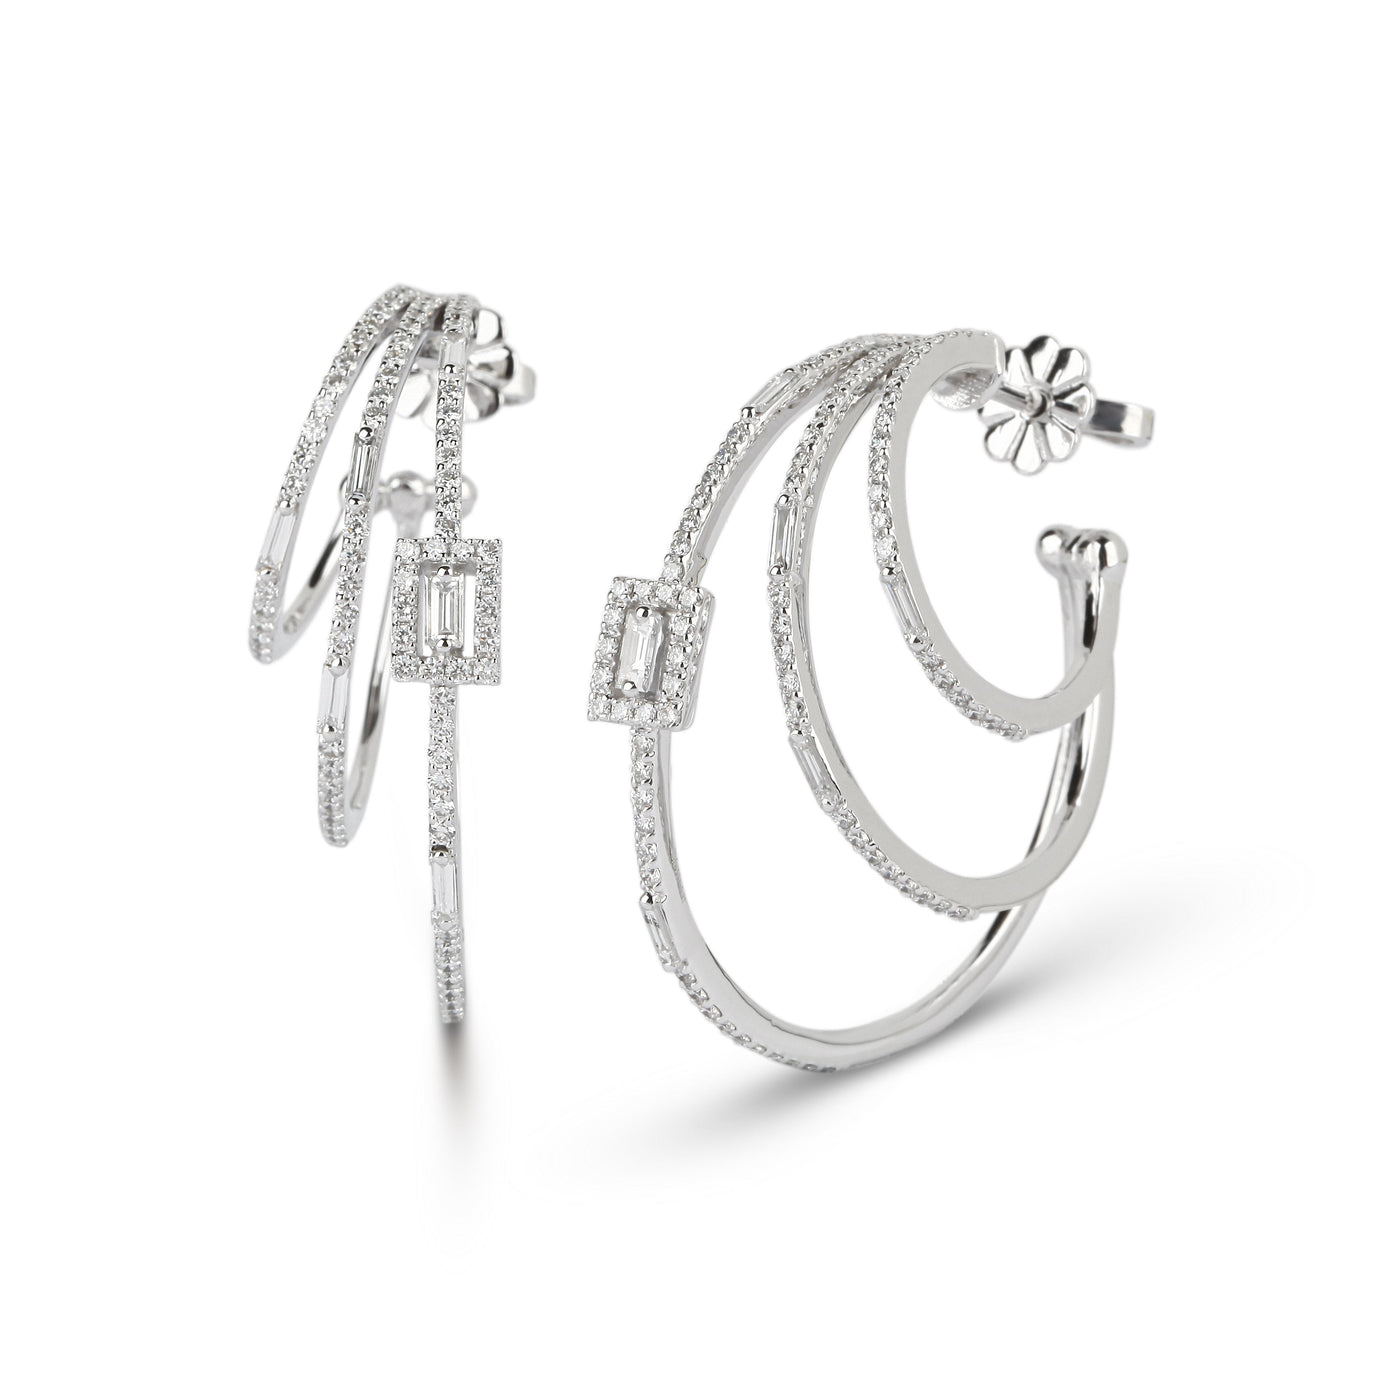 Multi Hoop Diamond Earrings | Jewelry Shops Online